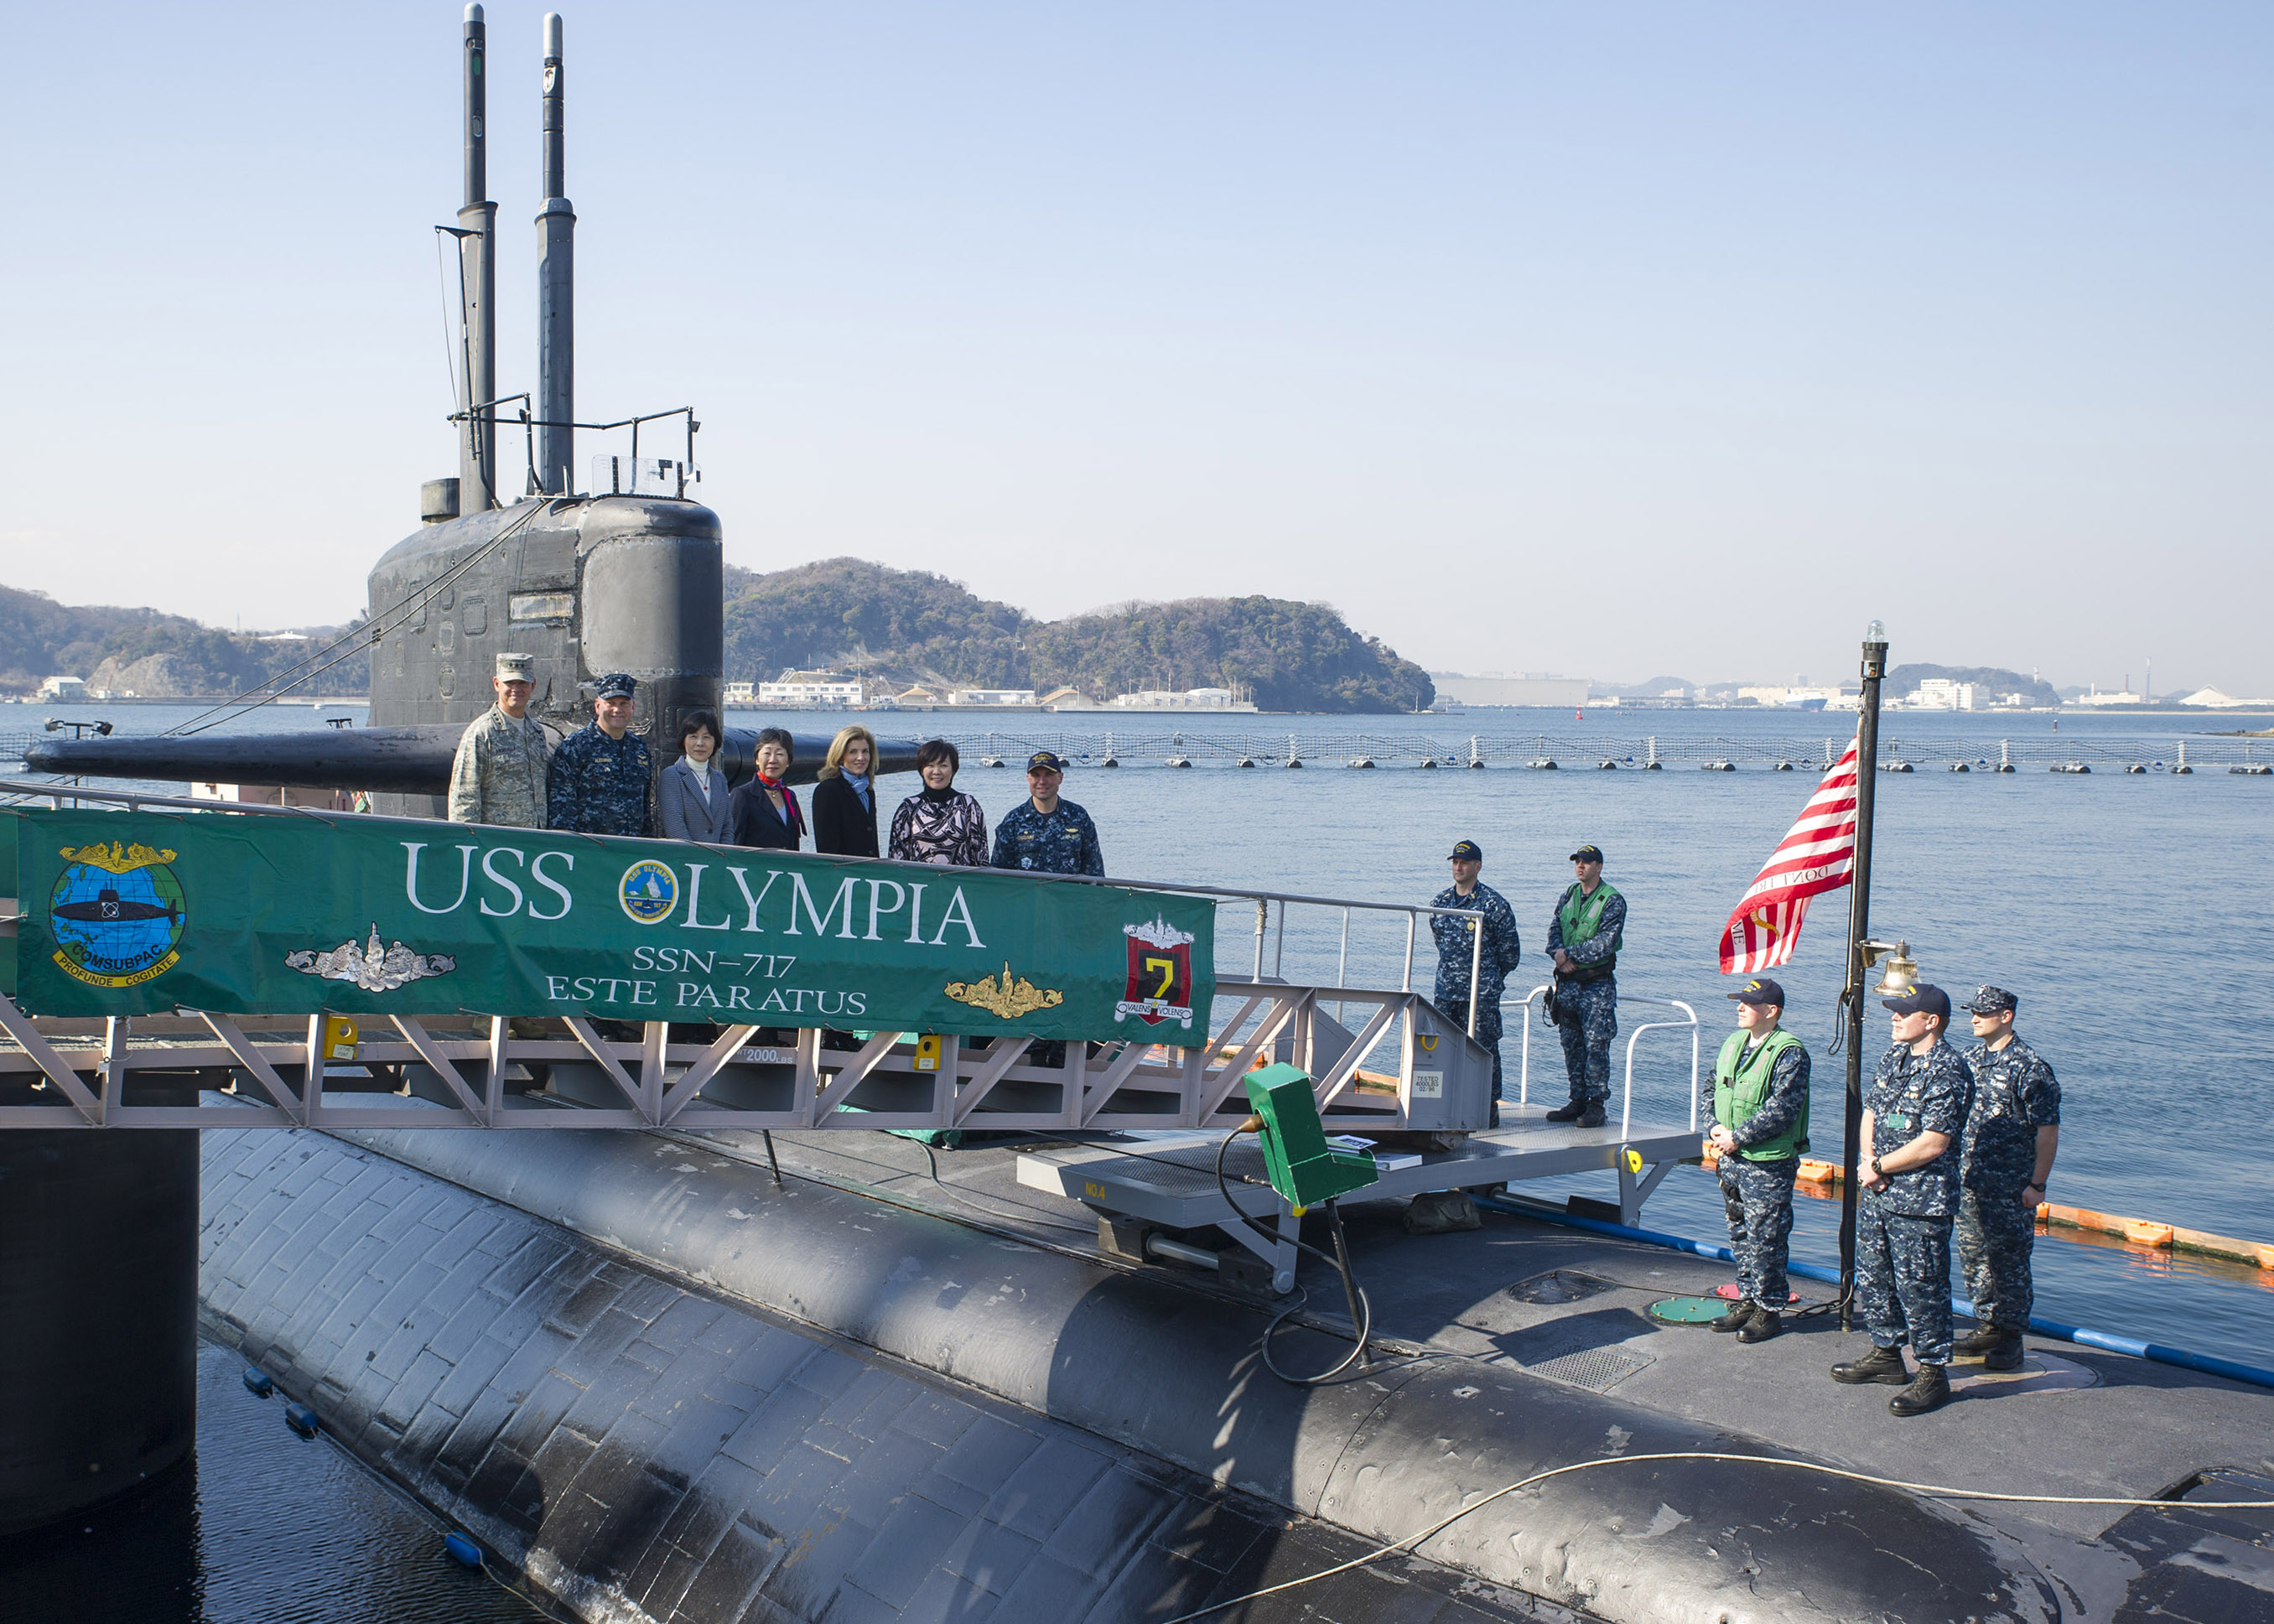 USS OLYMPIA SSN-717 in Yokosuka am 12.02.2015 Bild: U.S. Navy